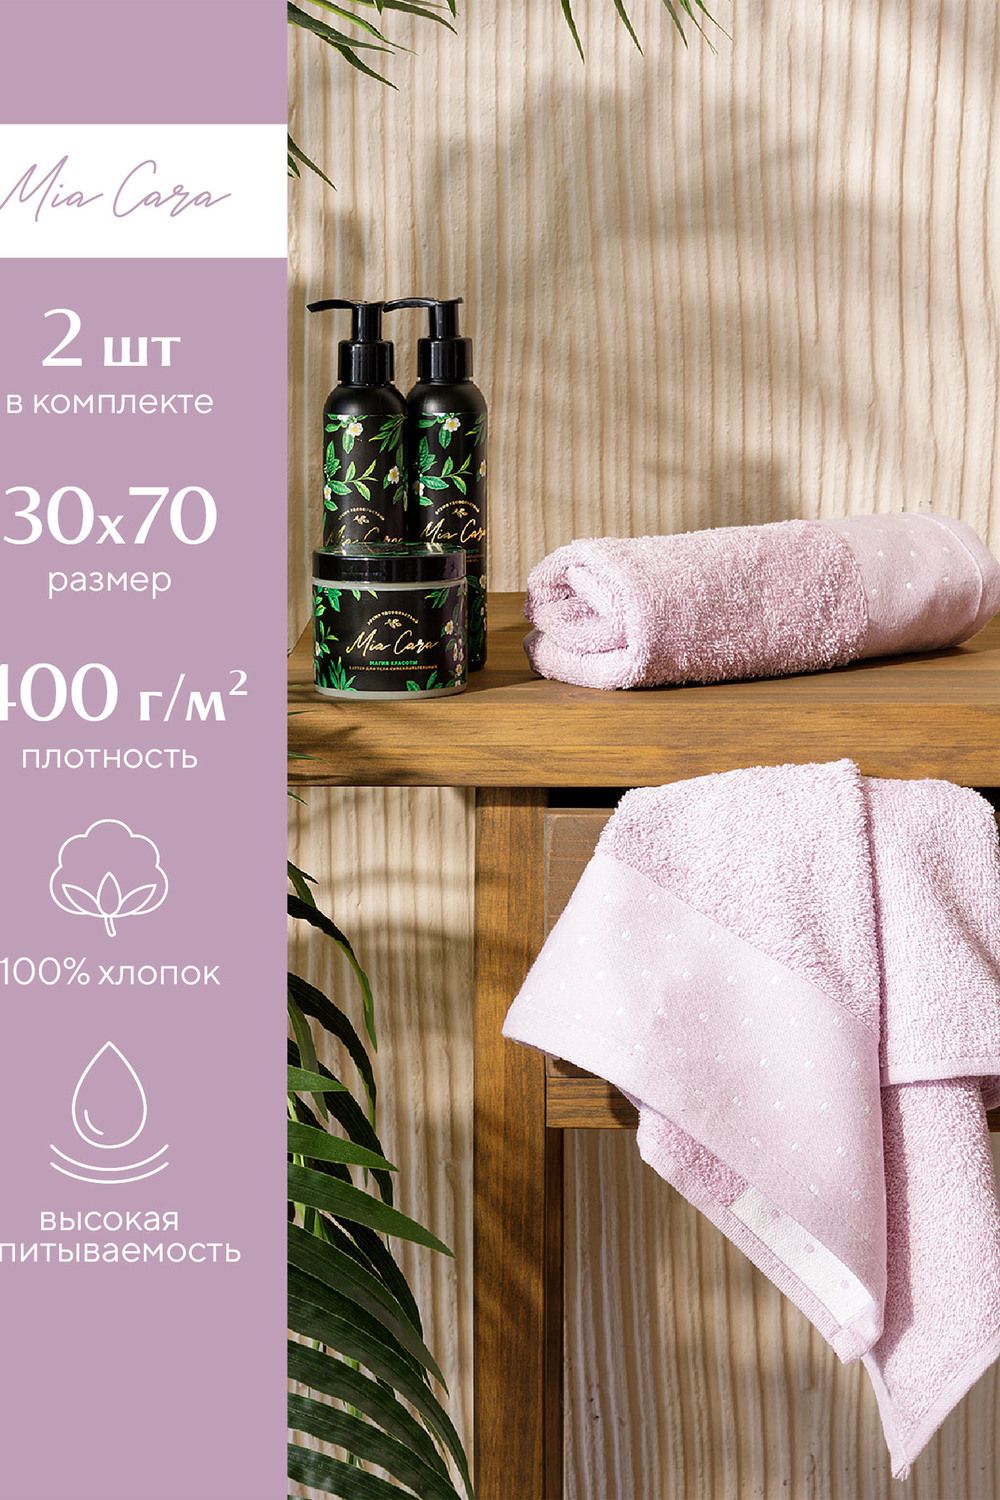 Комплект махровых полотенец "Mia Cara" 30х70 Красотка 2 шт. - розовый антик